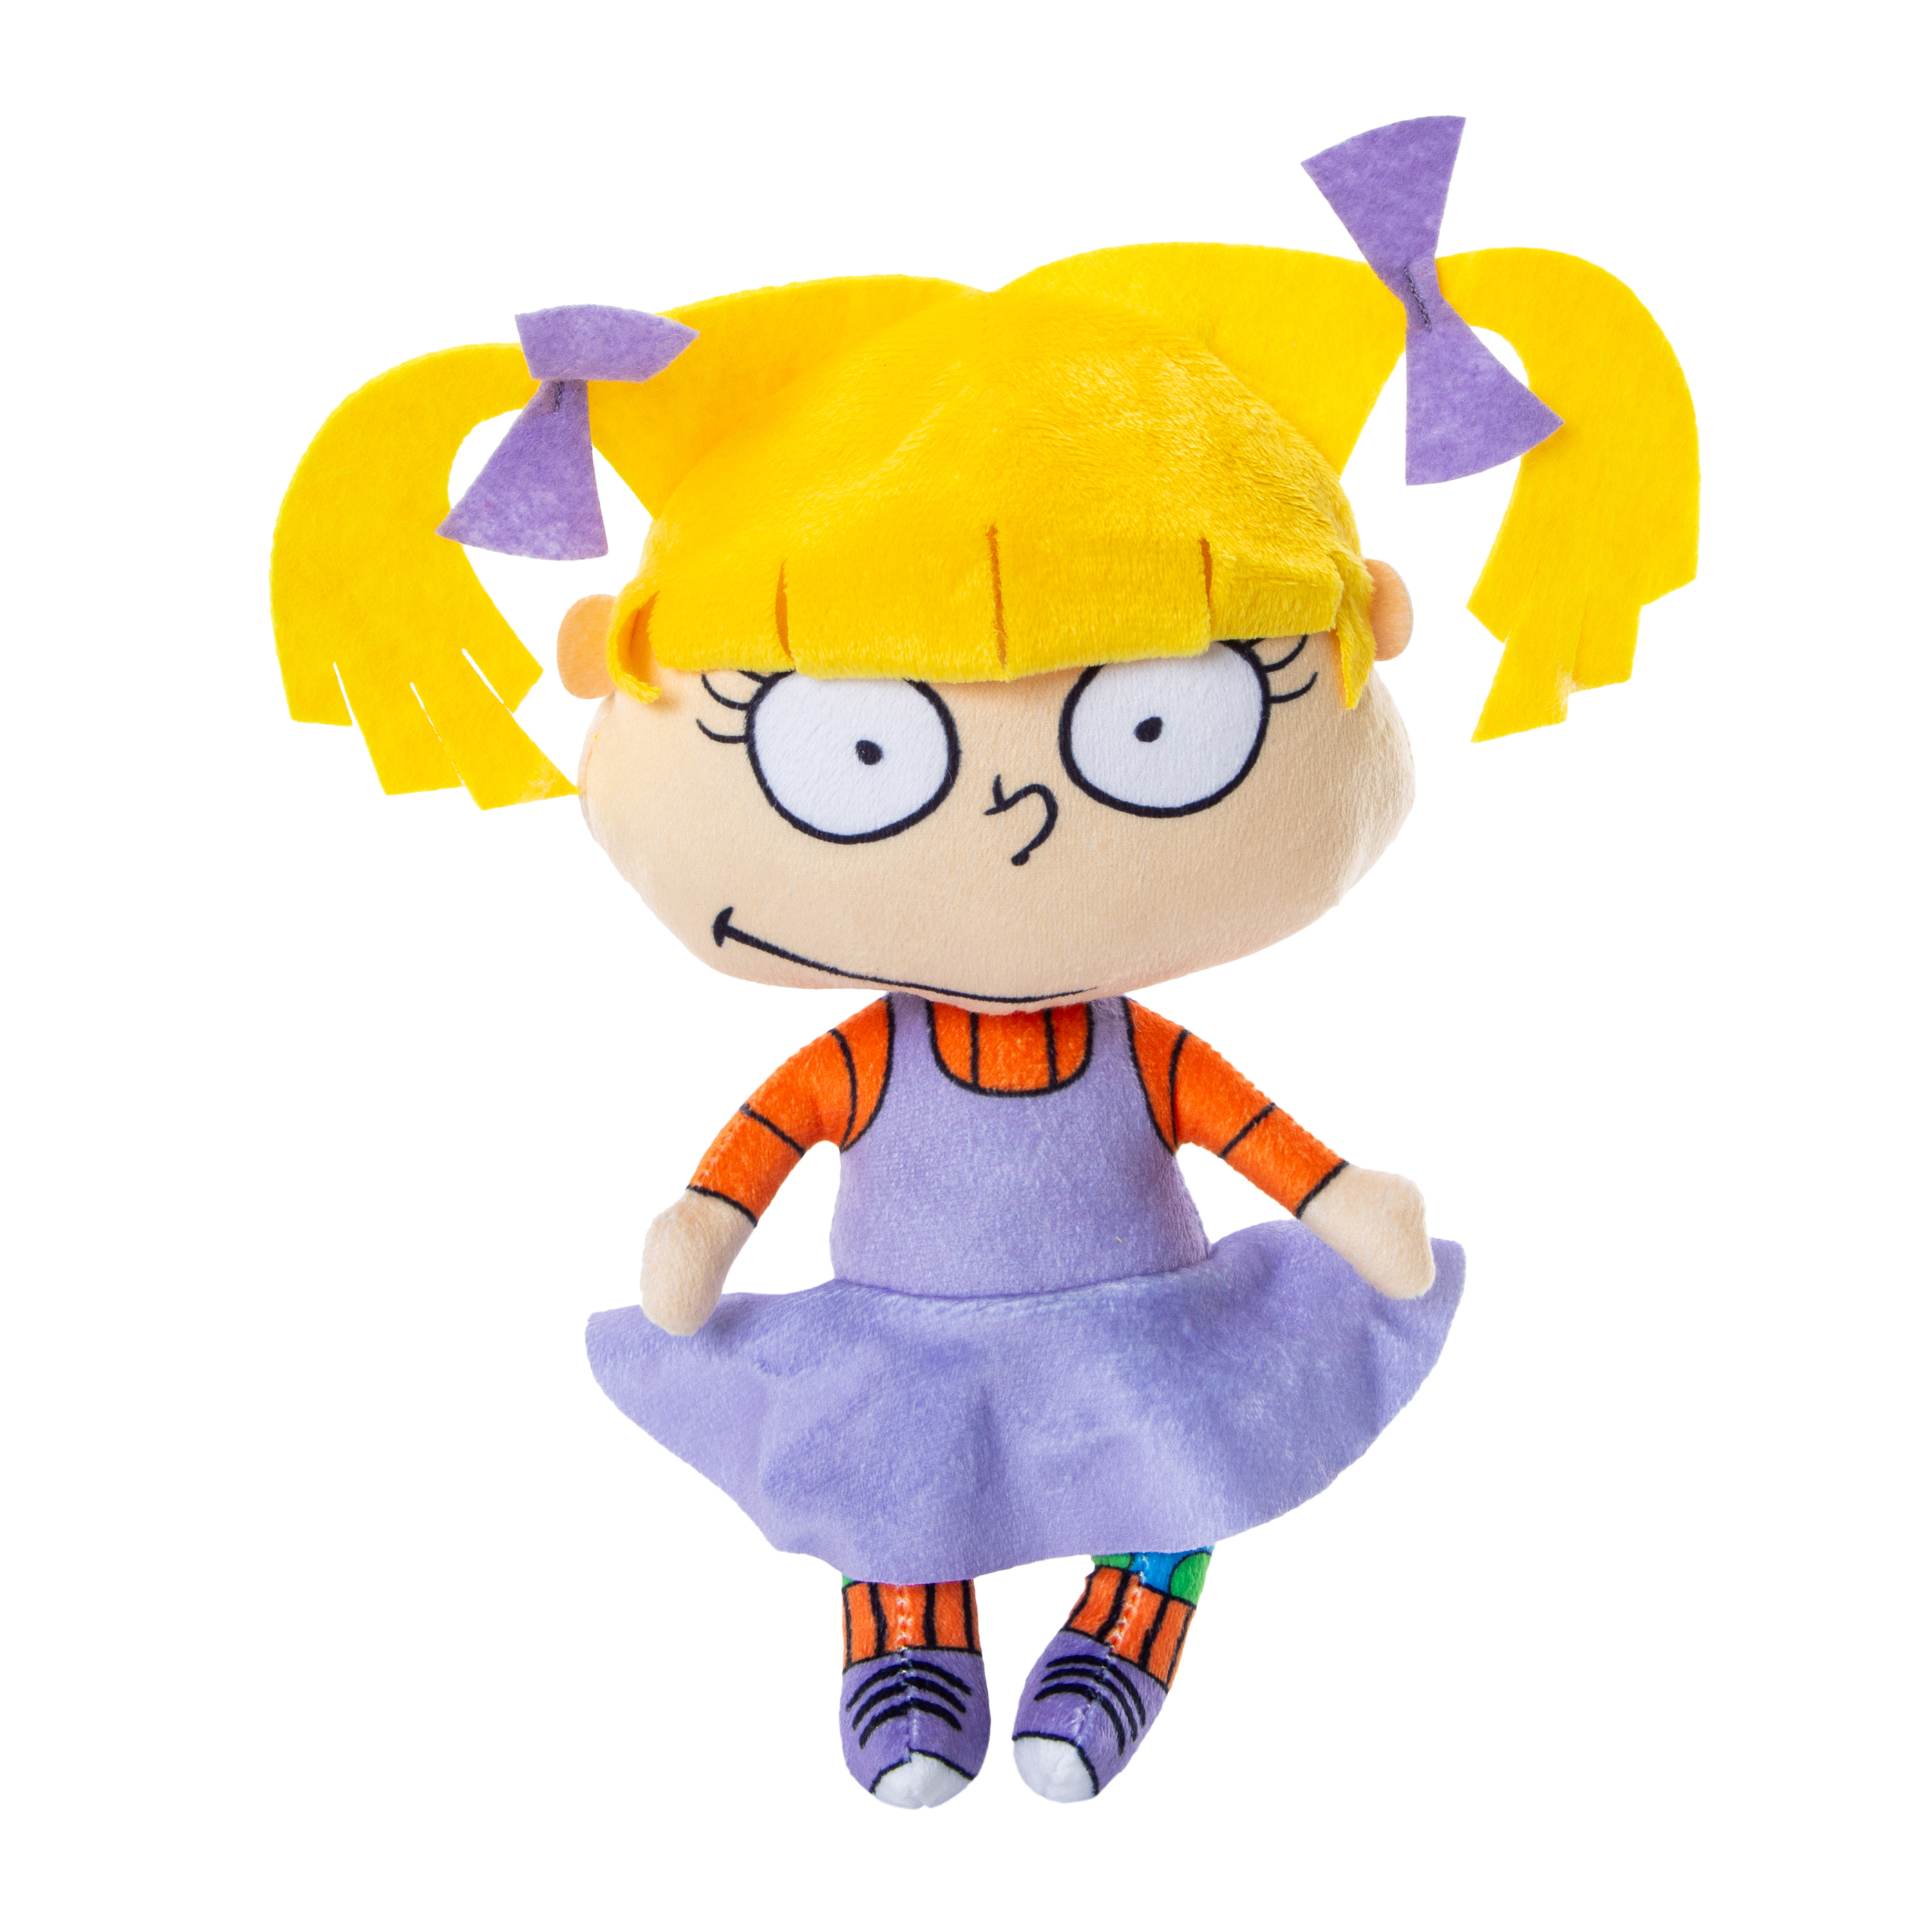 Nickelodeon Rugrats™ Angelica Plush